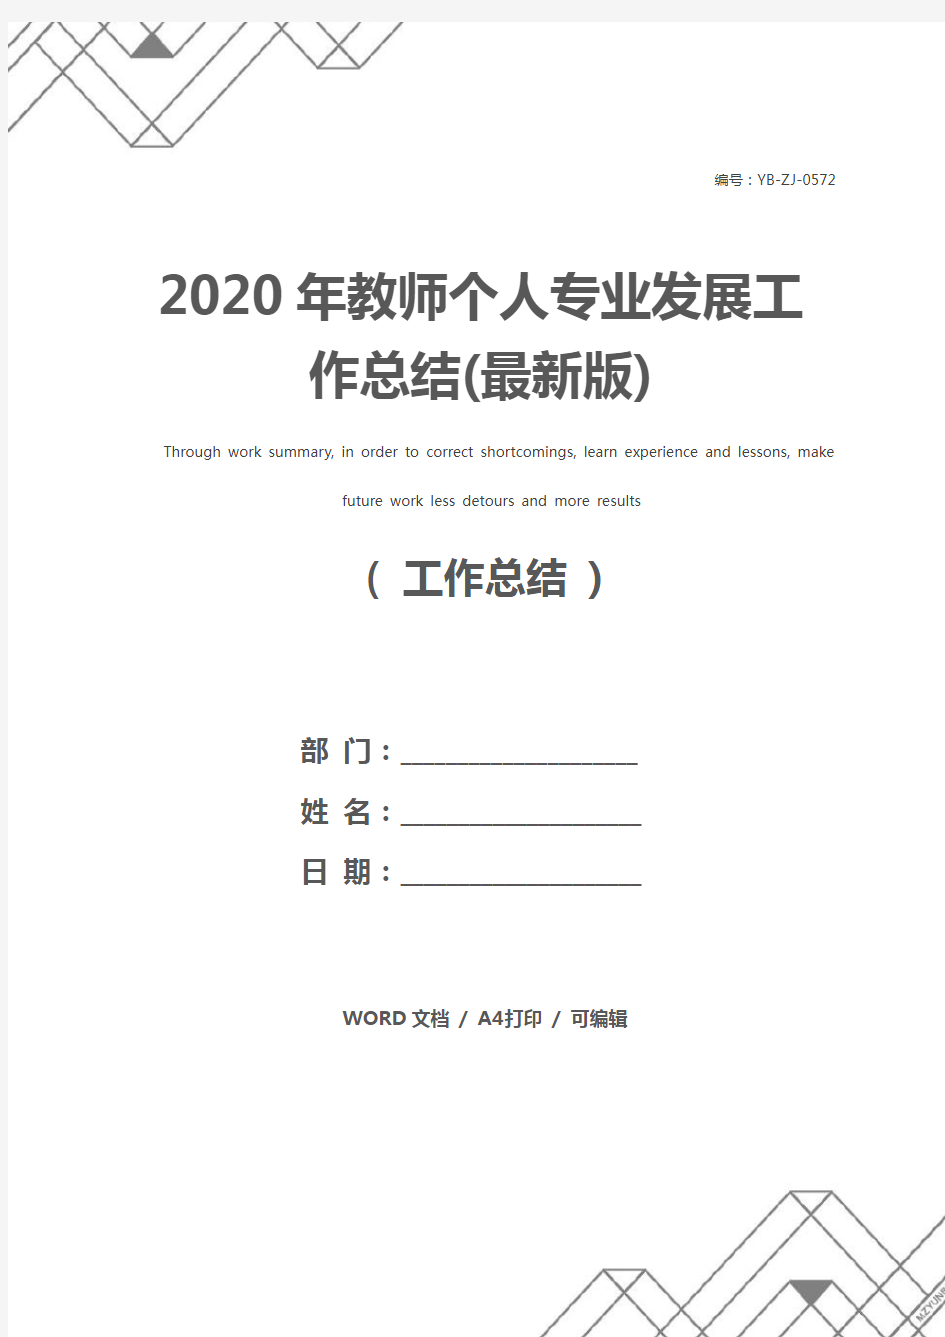 2020年教师个人专业发展工作总结(最新版)